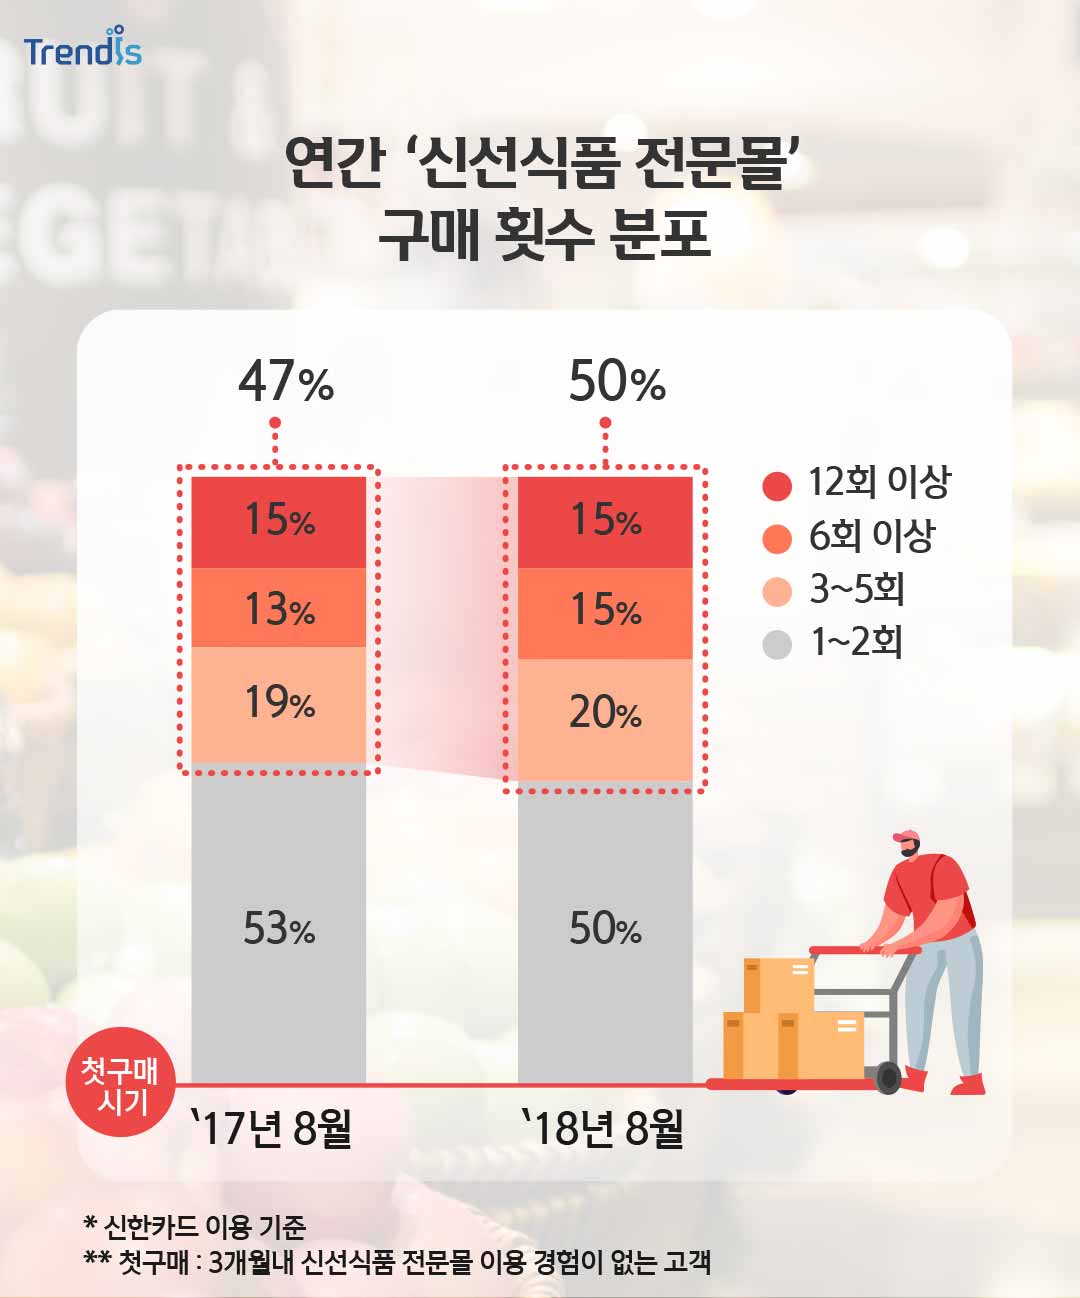 연간 ‘신선식품 전문몰’ 구매 횟수 분포